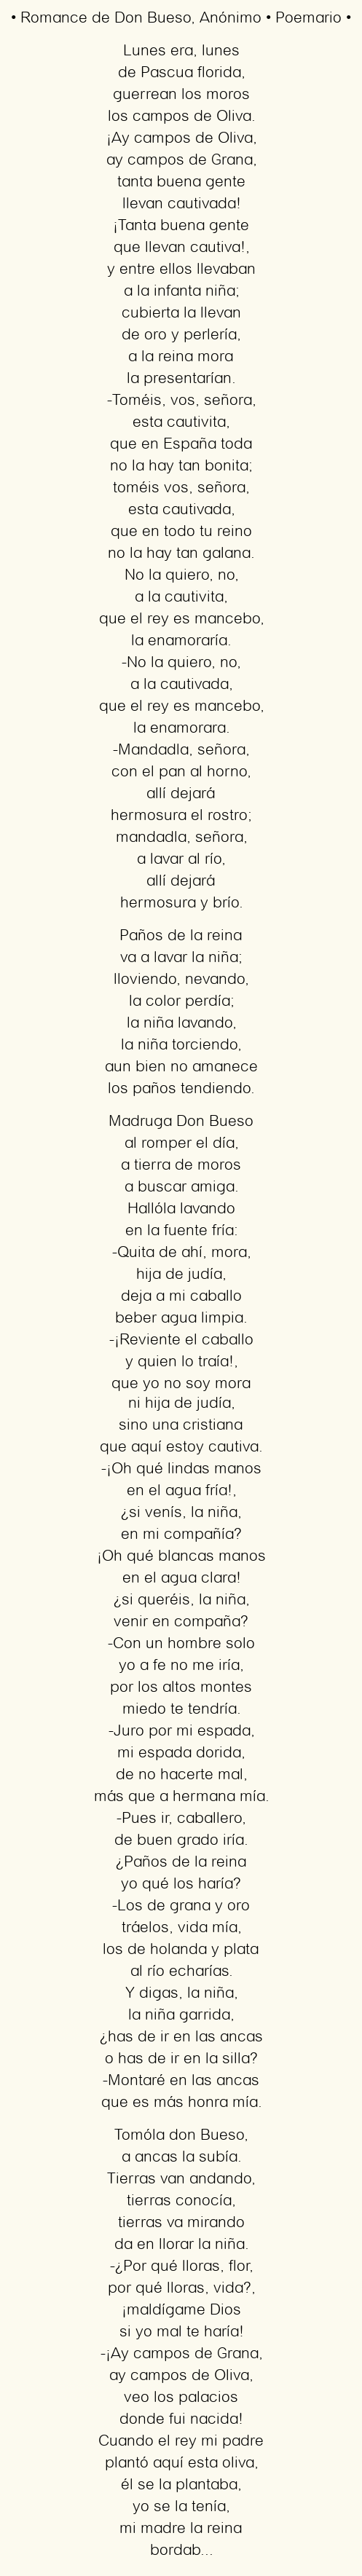 Imagen con el poema Romance de Don Bueso, por Anónimo